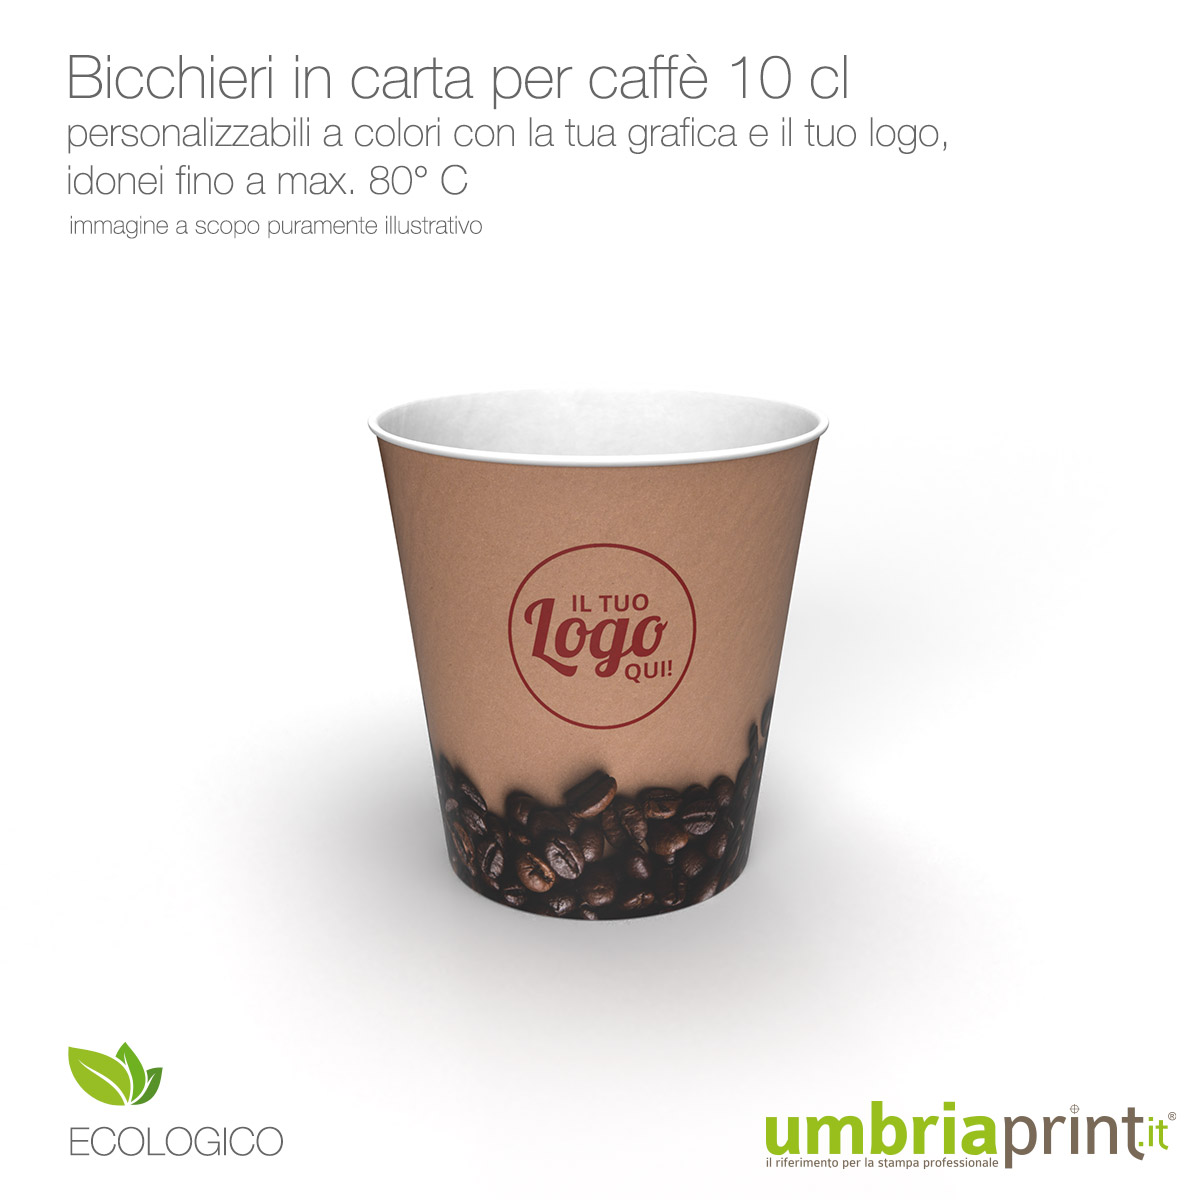 https://umbriaprint.it/stampa-professionale/wp-content/uploads/2022/04/bicchieri-caffe-personalizzati-con-logo-in-carta-stampa-a-colori-umbriaprint.jpg